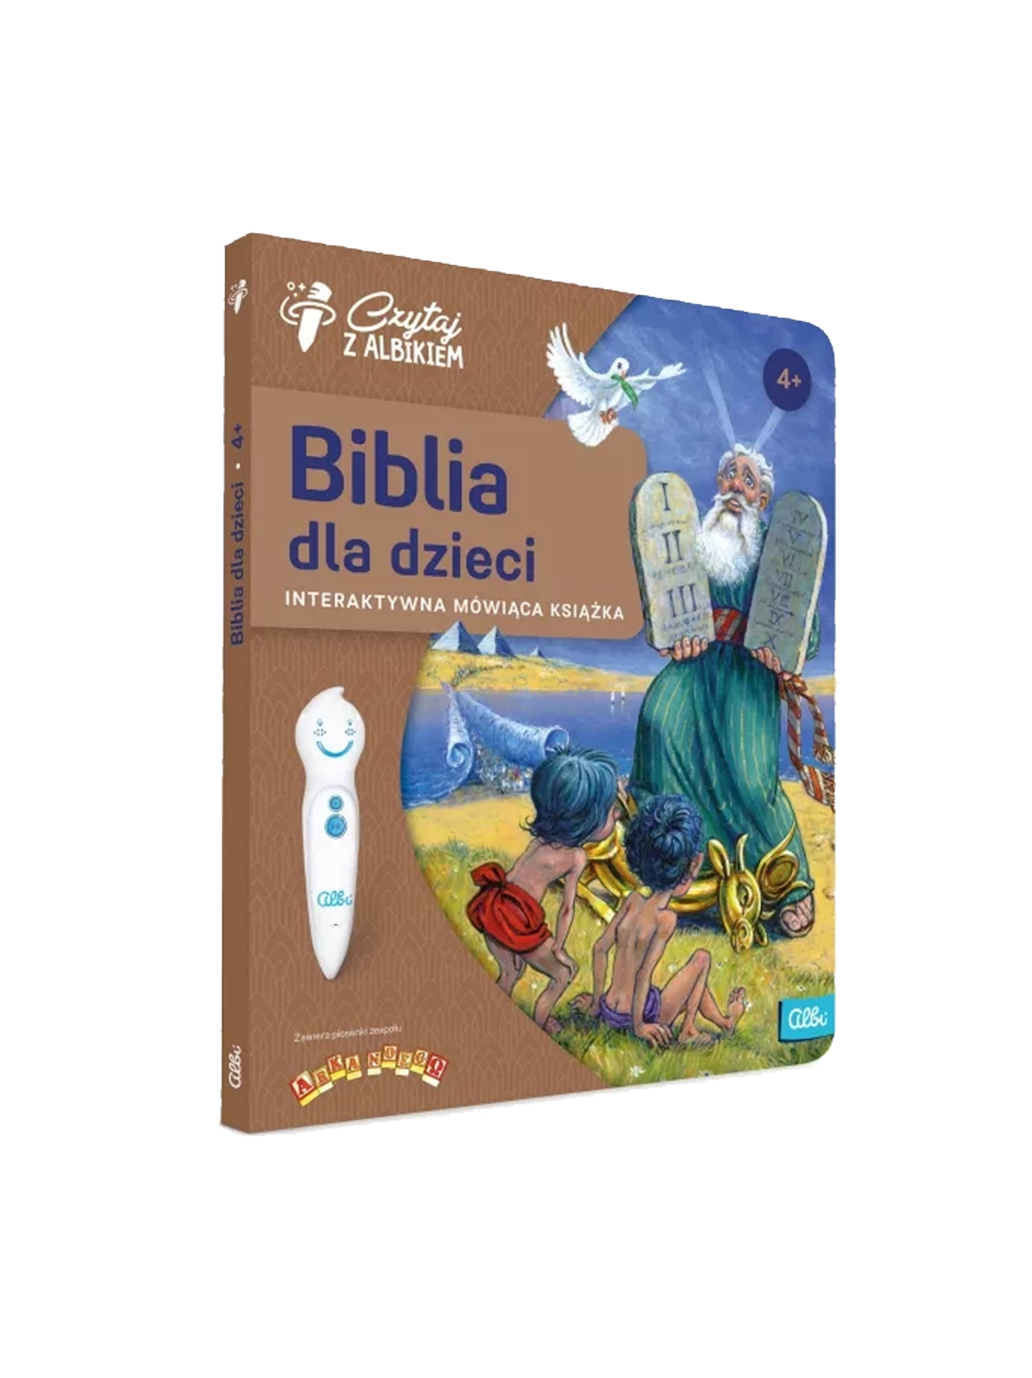 Biblia dla dzieci. Książka interaction